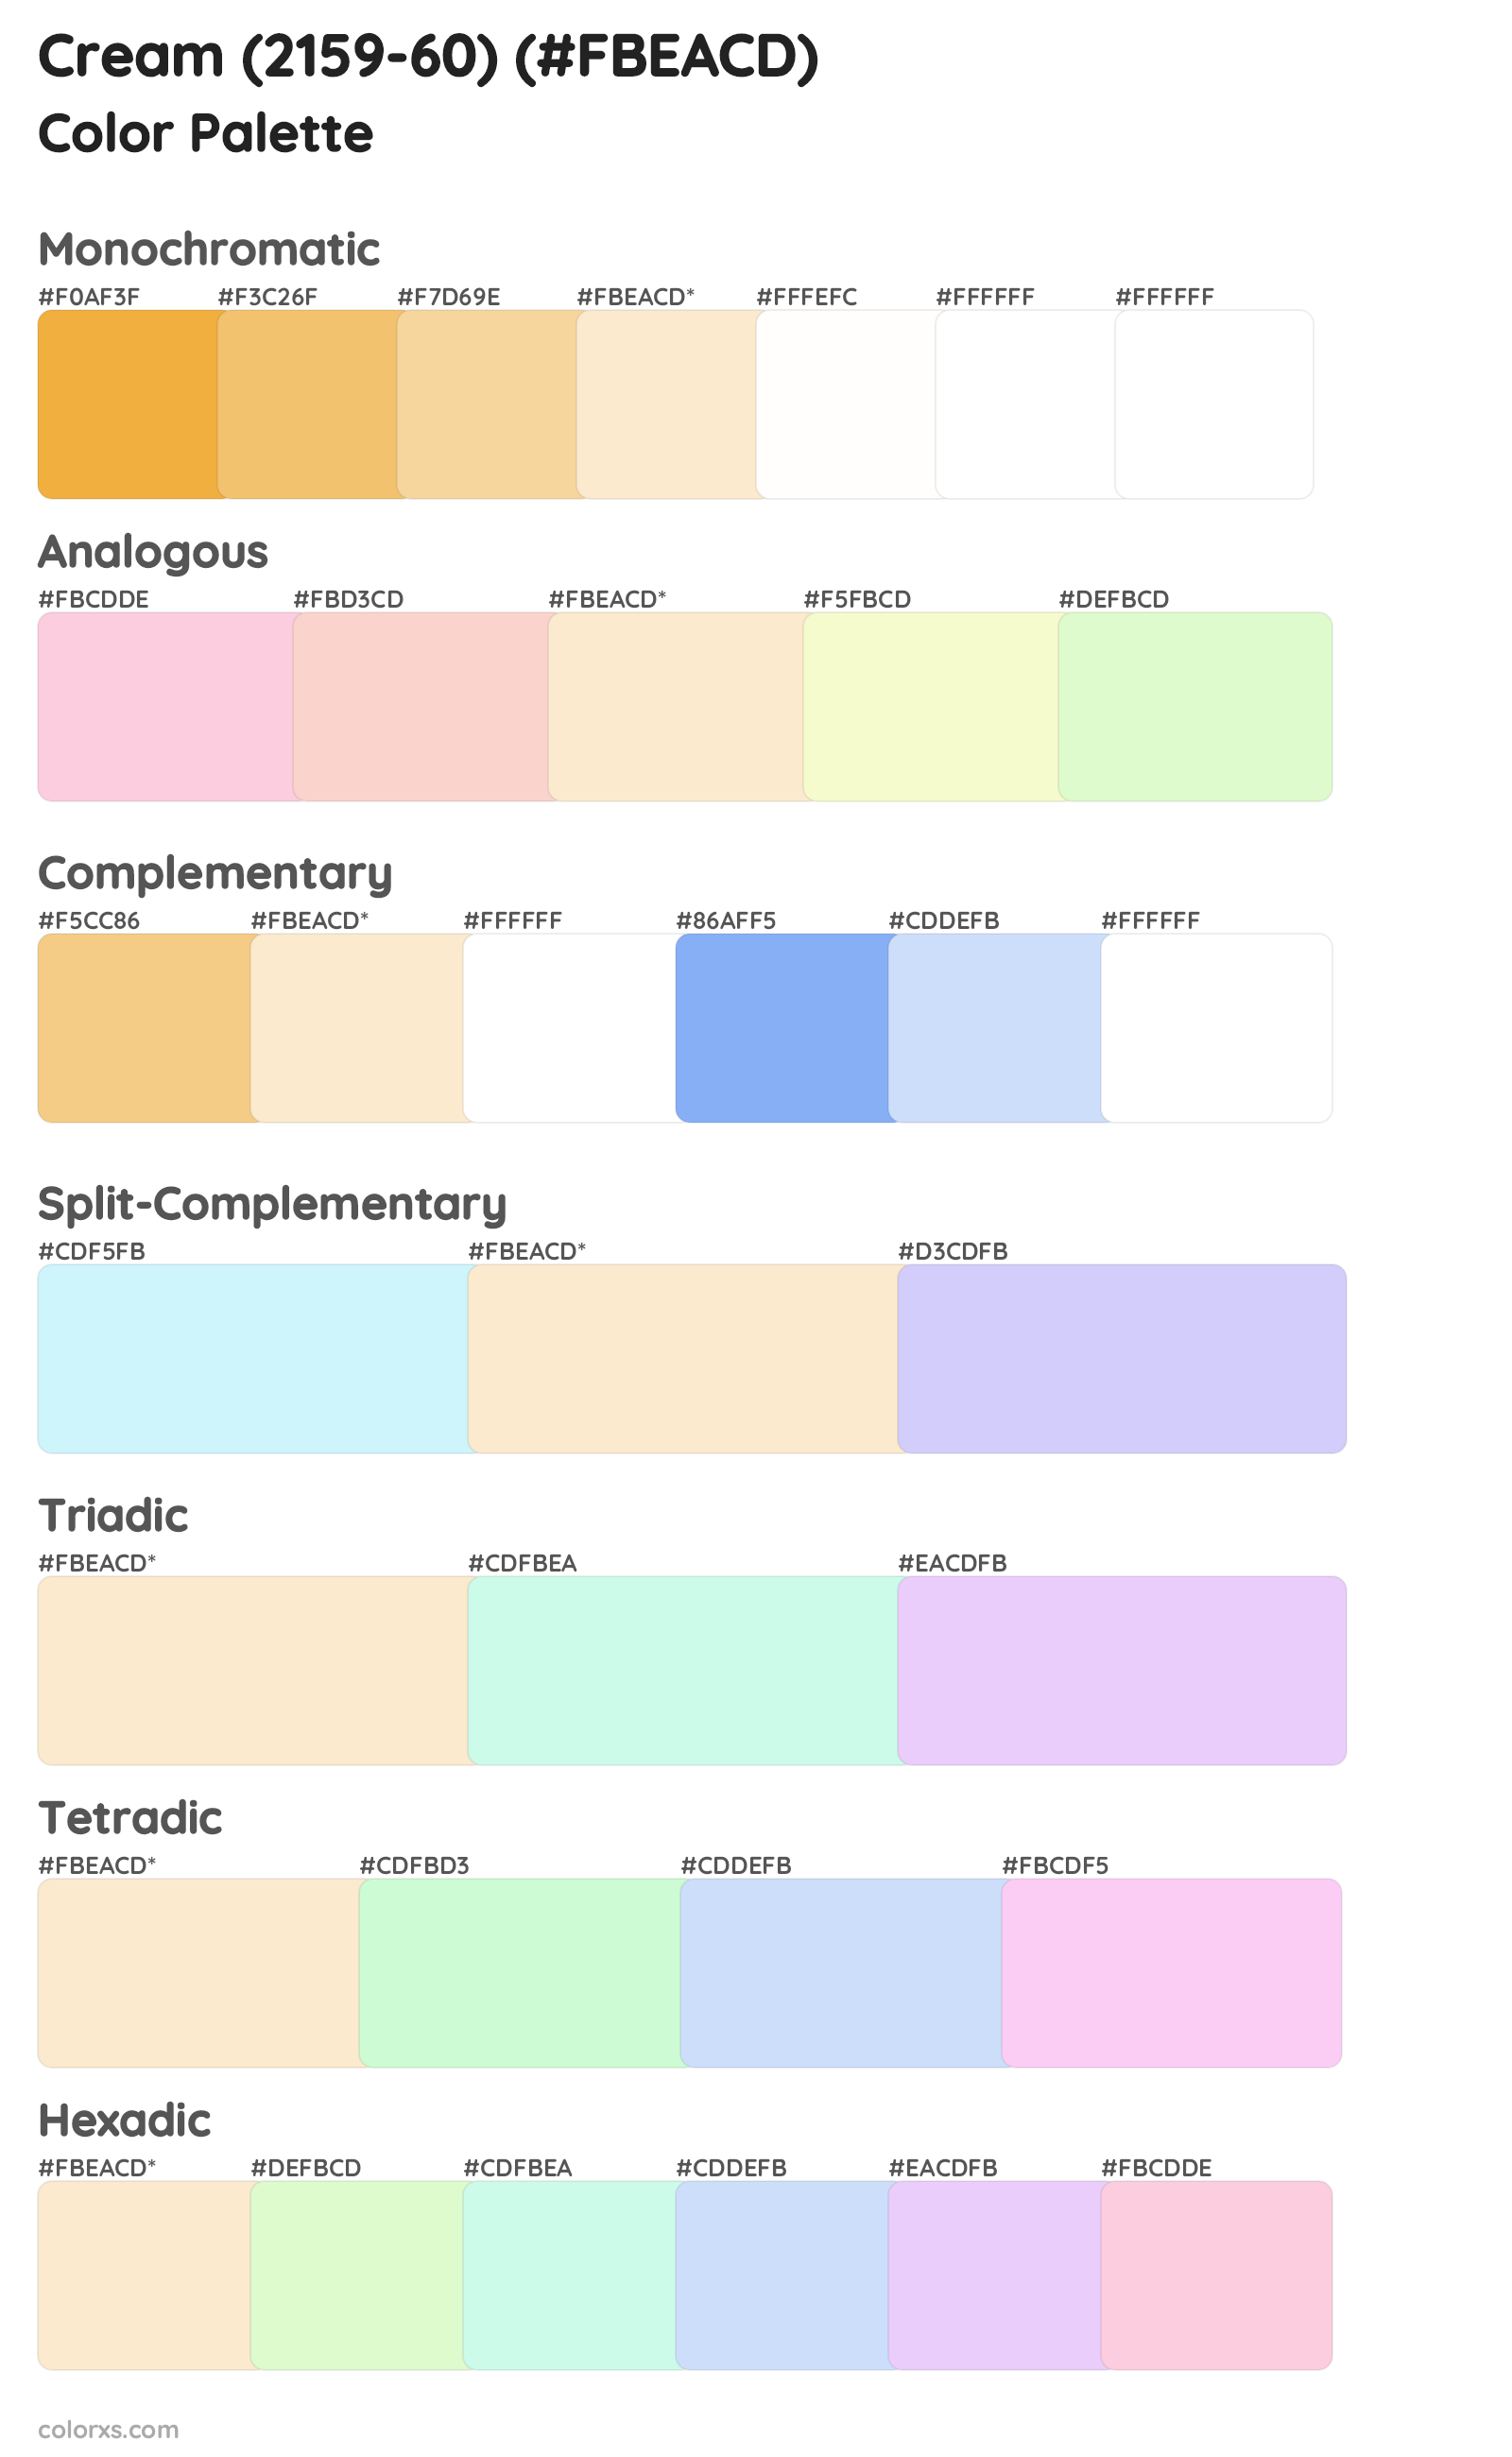 Cream (2159-60) Color Scheme Palettes